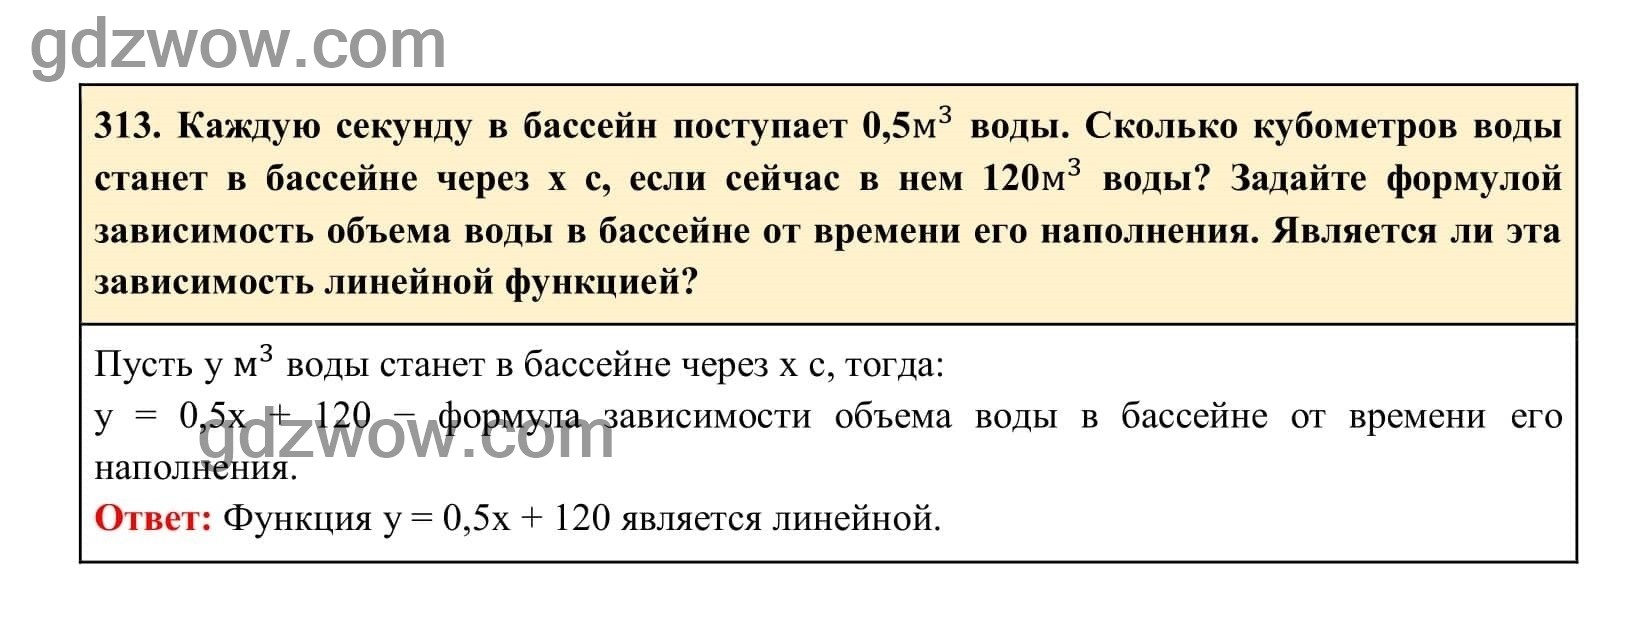 Упражнение 313 - ГДЗ по Алгебре 7 класс Учебник Макарычев (решебник) - GDZwow